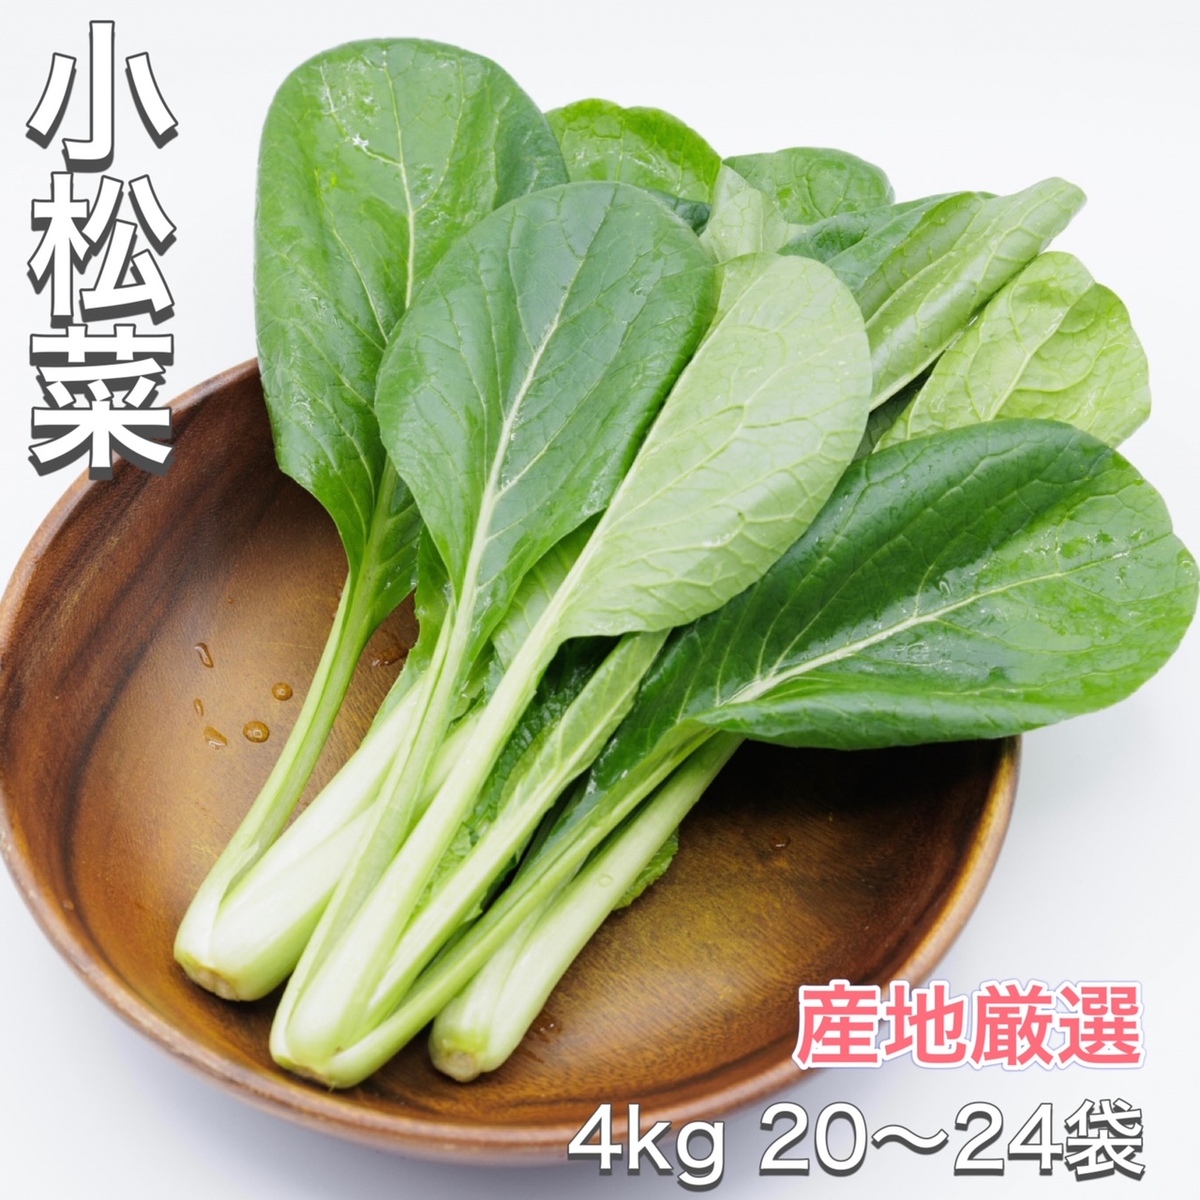 【楽天市場】【新商品】小松菜 産地厳選 1kg こまつな コマツナ 野菜